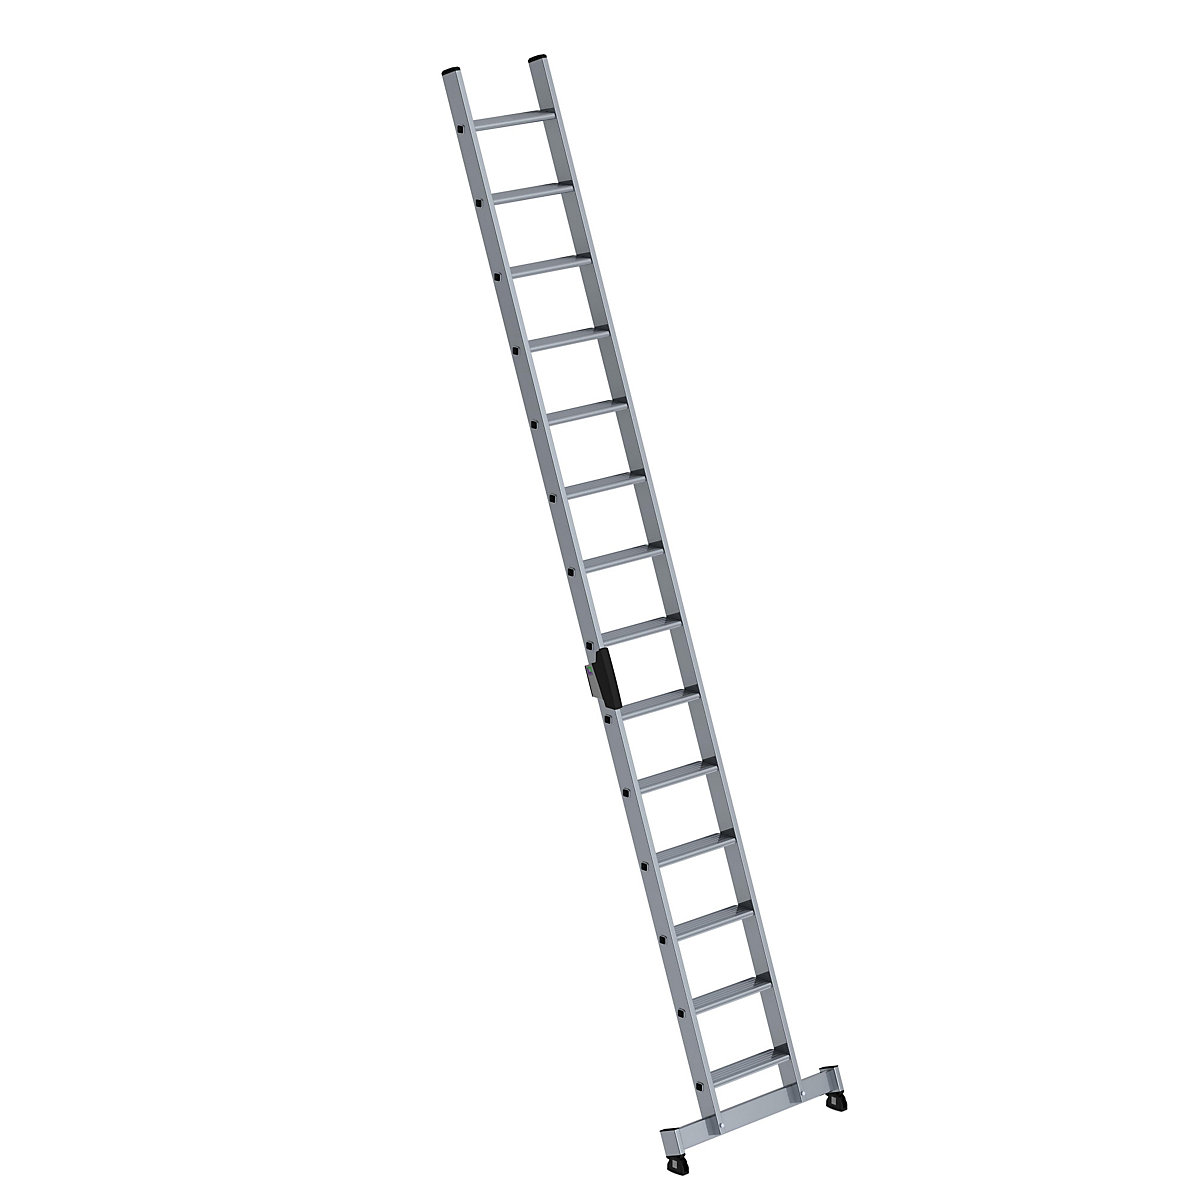 Prislonska lestev s stopnicami – MUNK, profesionalna izvedba, širina 420 mm, 14 stopnic, s prečko nivello®-10